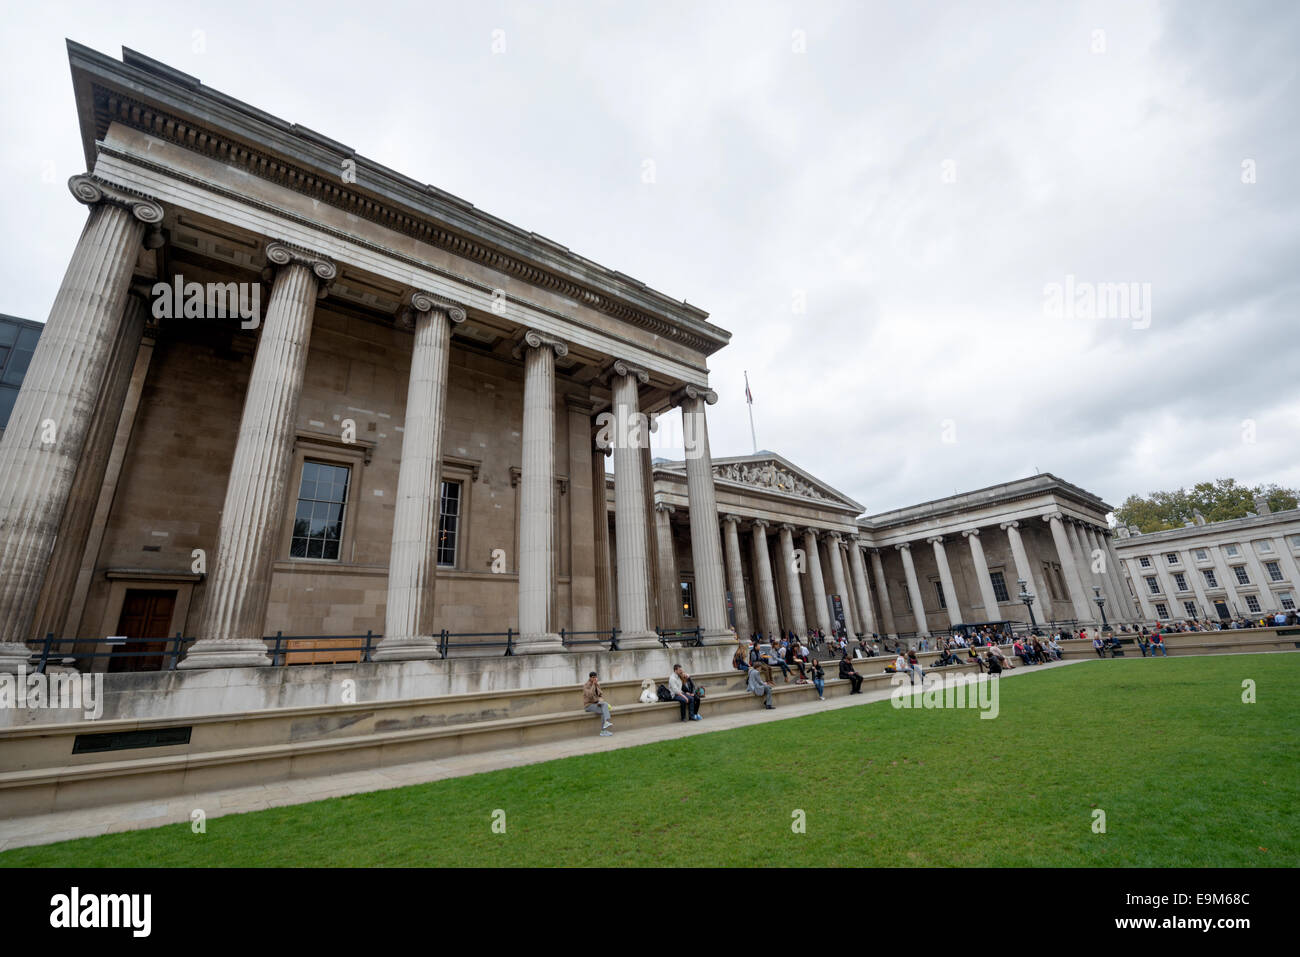 LONDON, Großbritannien - der Haupteingang zum British Museum in der Innenstadt von London. Das Museum ist der Geschichte und Kultur der Menschheit gewidmet und hat etwa 8 Millionen Werke in seiner permanenten Sammlung. Das British Museum in London beherbergt eine riesige Sammlung von Kunst und Artefakten der Welt, die die Geschichte, Kultur und Zivilisationen der Menschheit aus der ganzen Welt widerspiegeln. Stockfoto